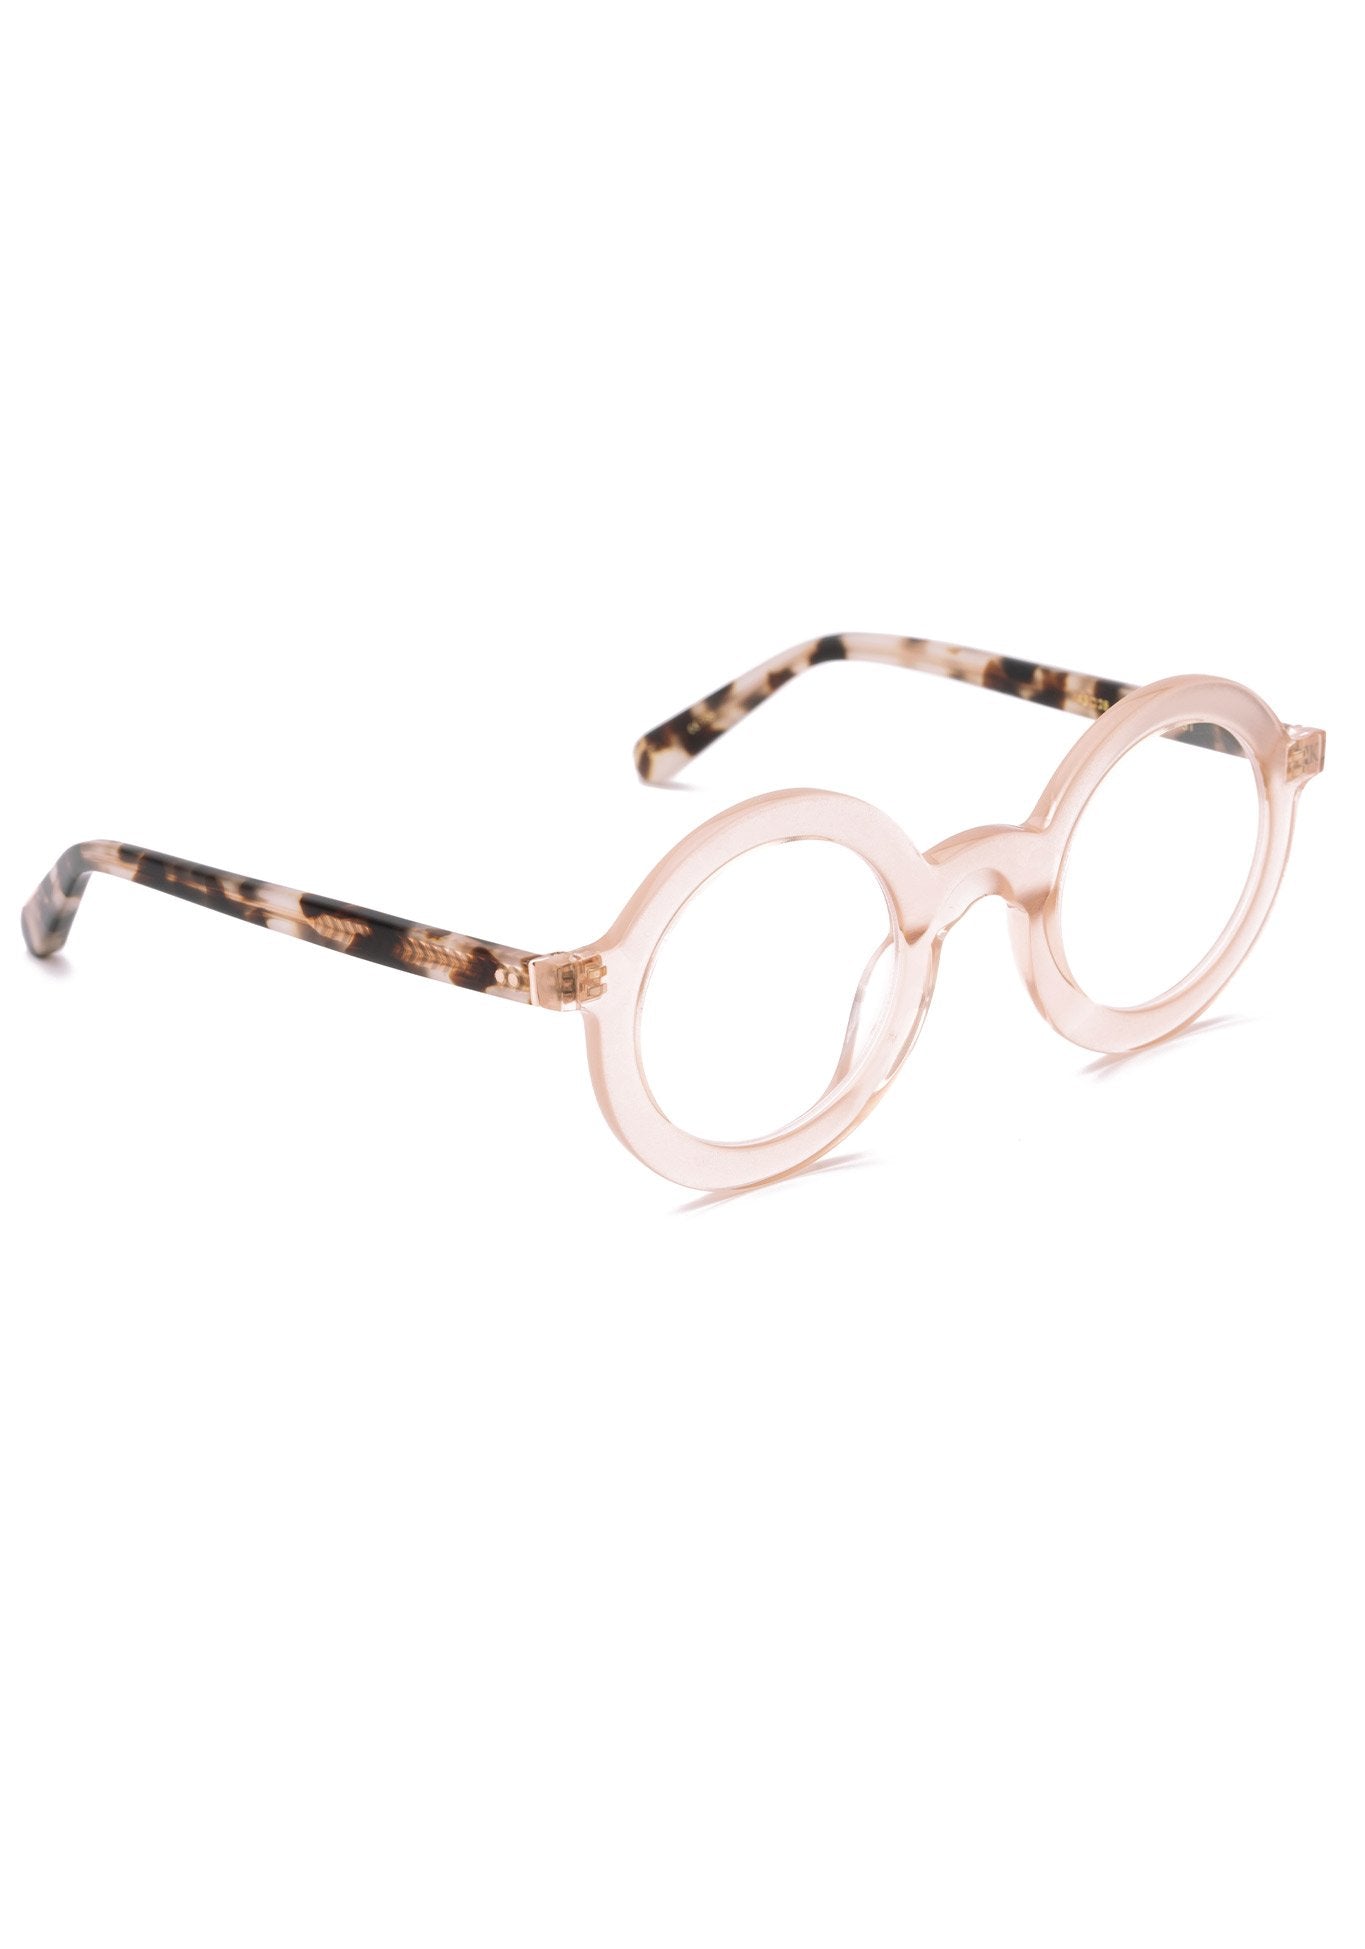 KREWE - HURST | Petal Handcrafted, Luxury Pink Acetate Eyeglasses